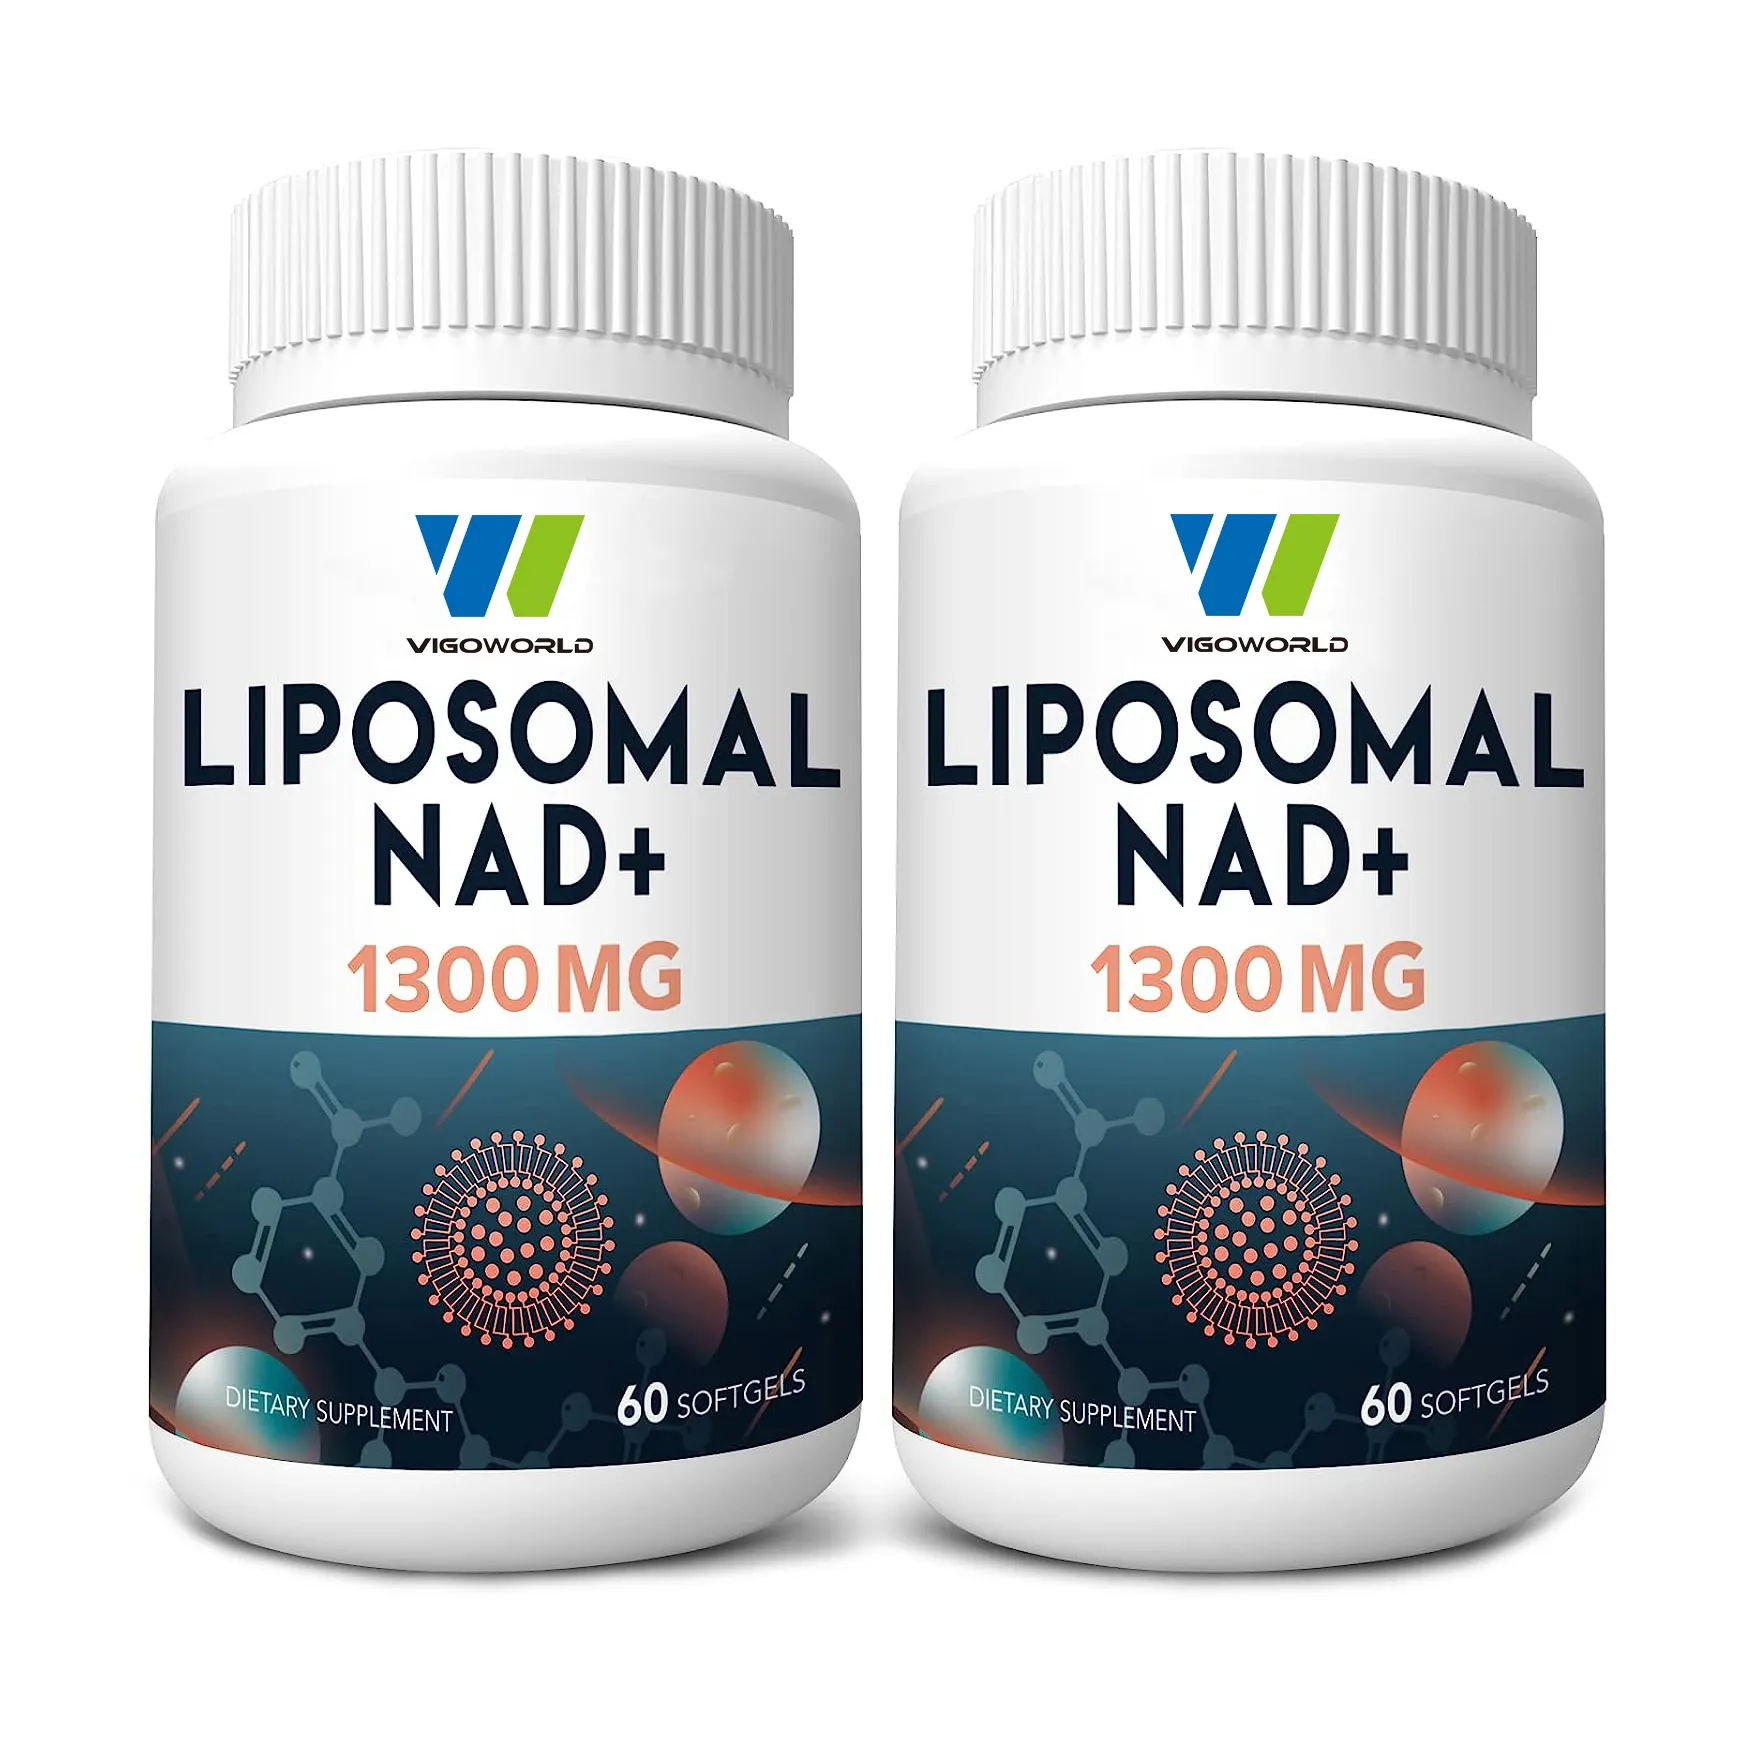 Liposomal नाद + पूरक करने के लिए 98% शुद्ध कैप्सूल वैकल्पिक Nicotinamide Riboside या NADH नाद को बढ़ावा देने के लिए + उम्र बढ़ने के लिए रक्षा ऊर्जा